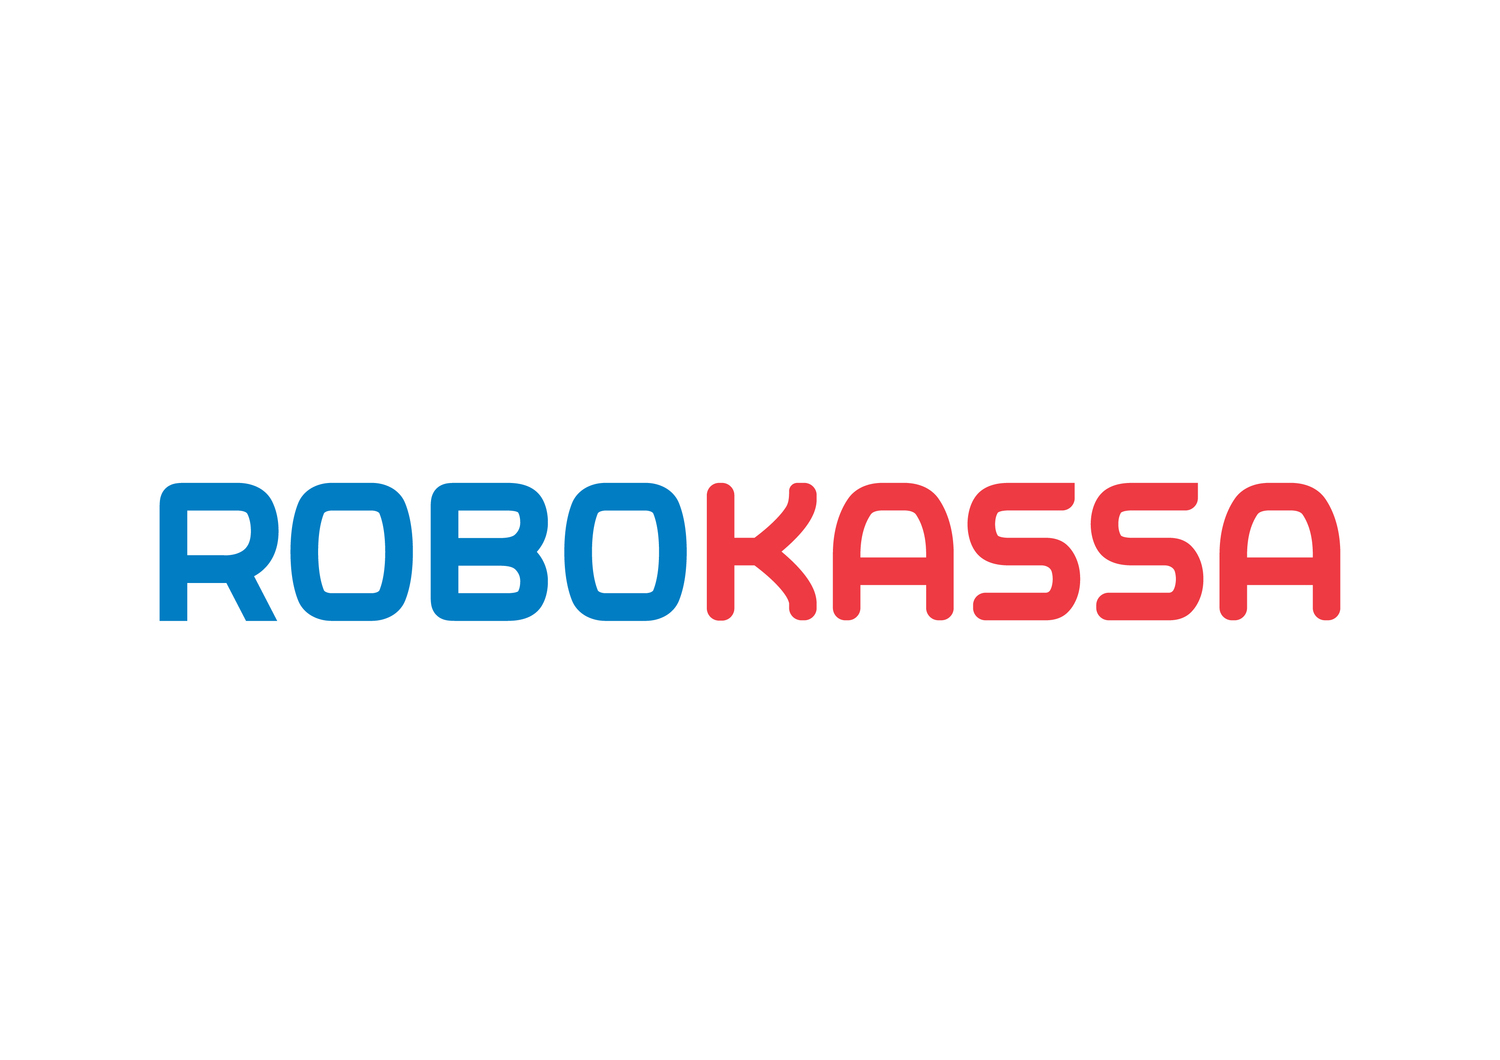 Robokassa — обзор и отзывы о популярном российском агрегаторе платежей